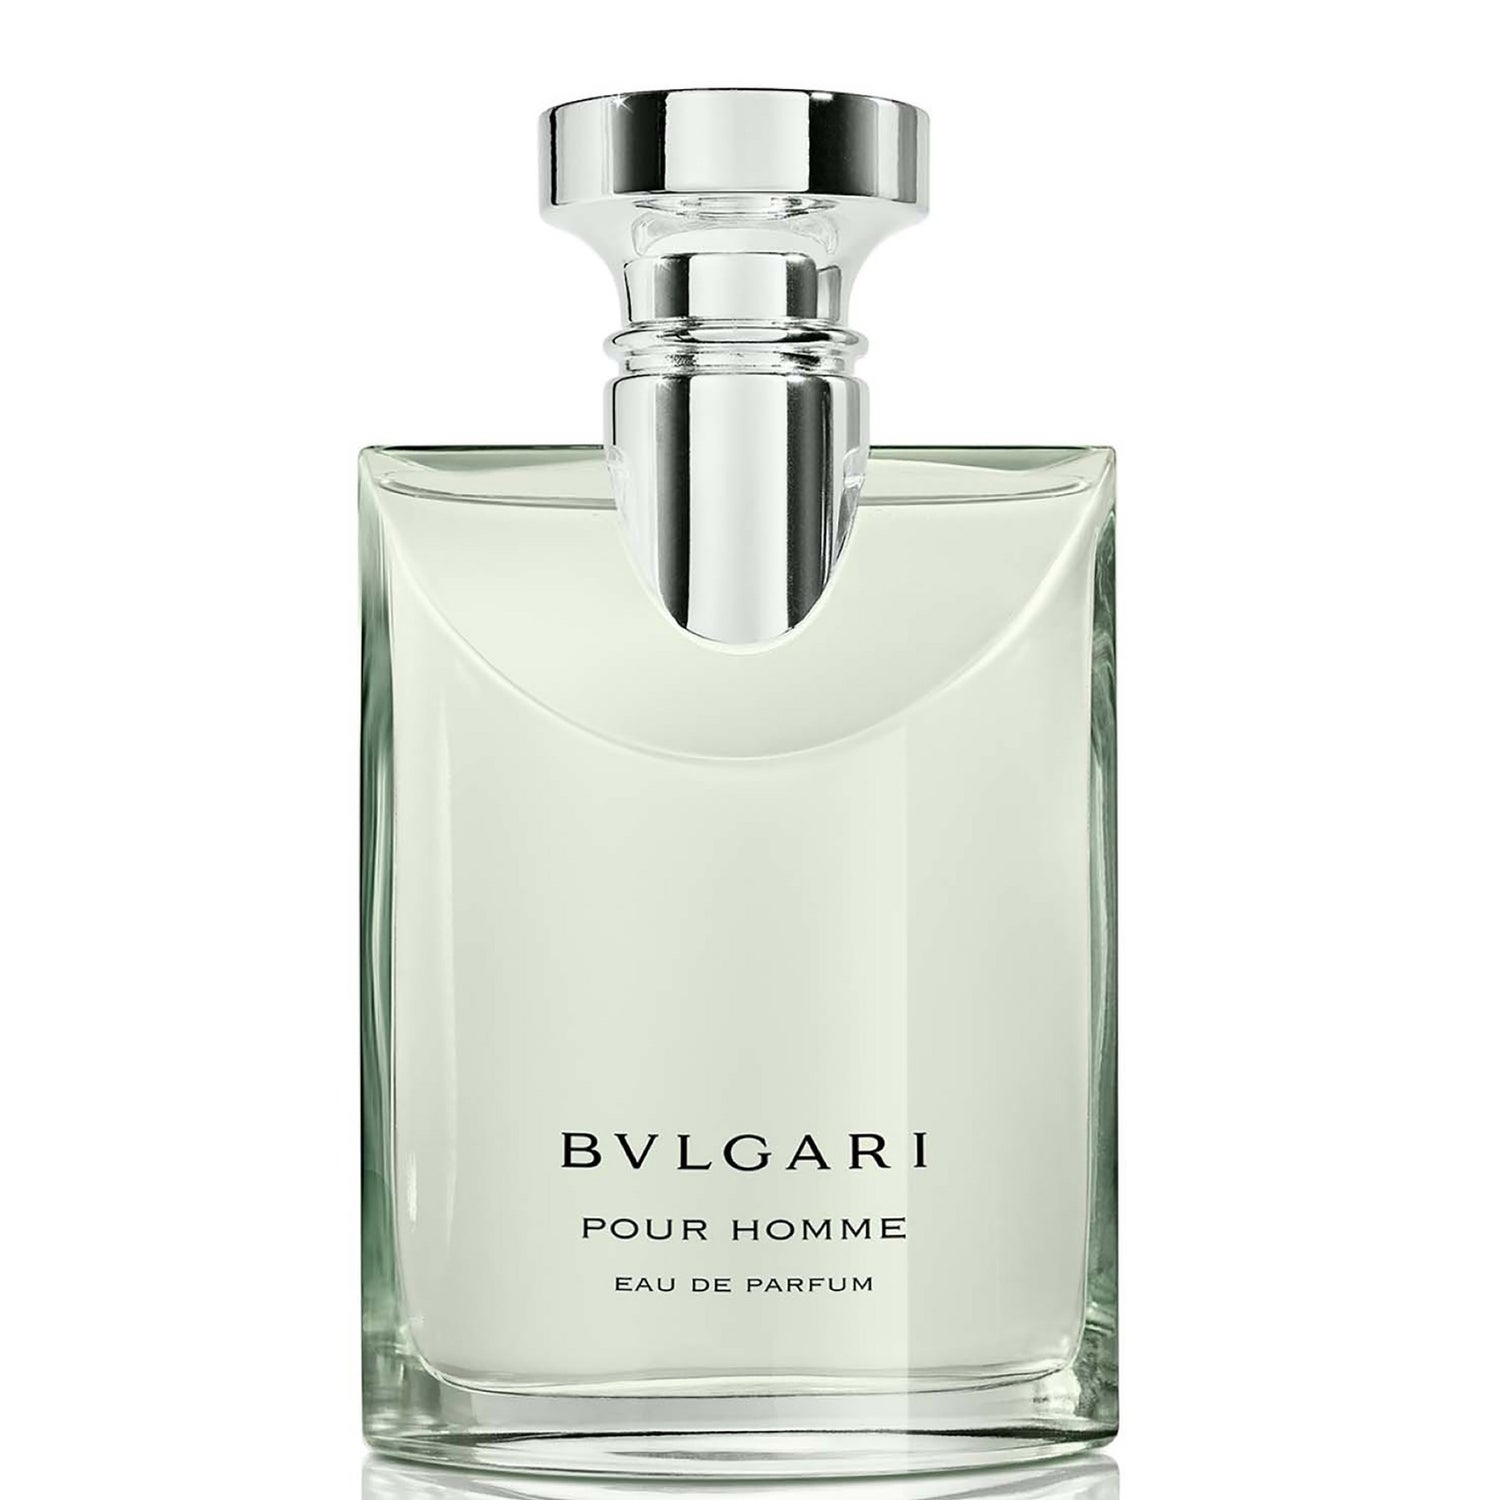 BVLGARI Pour Homme Eau de Parfum 100ml